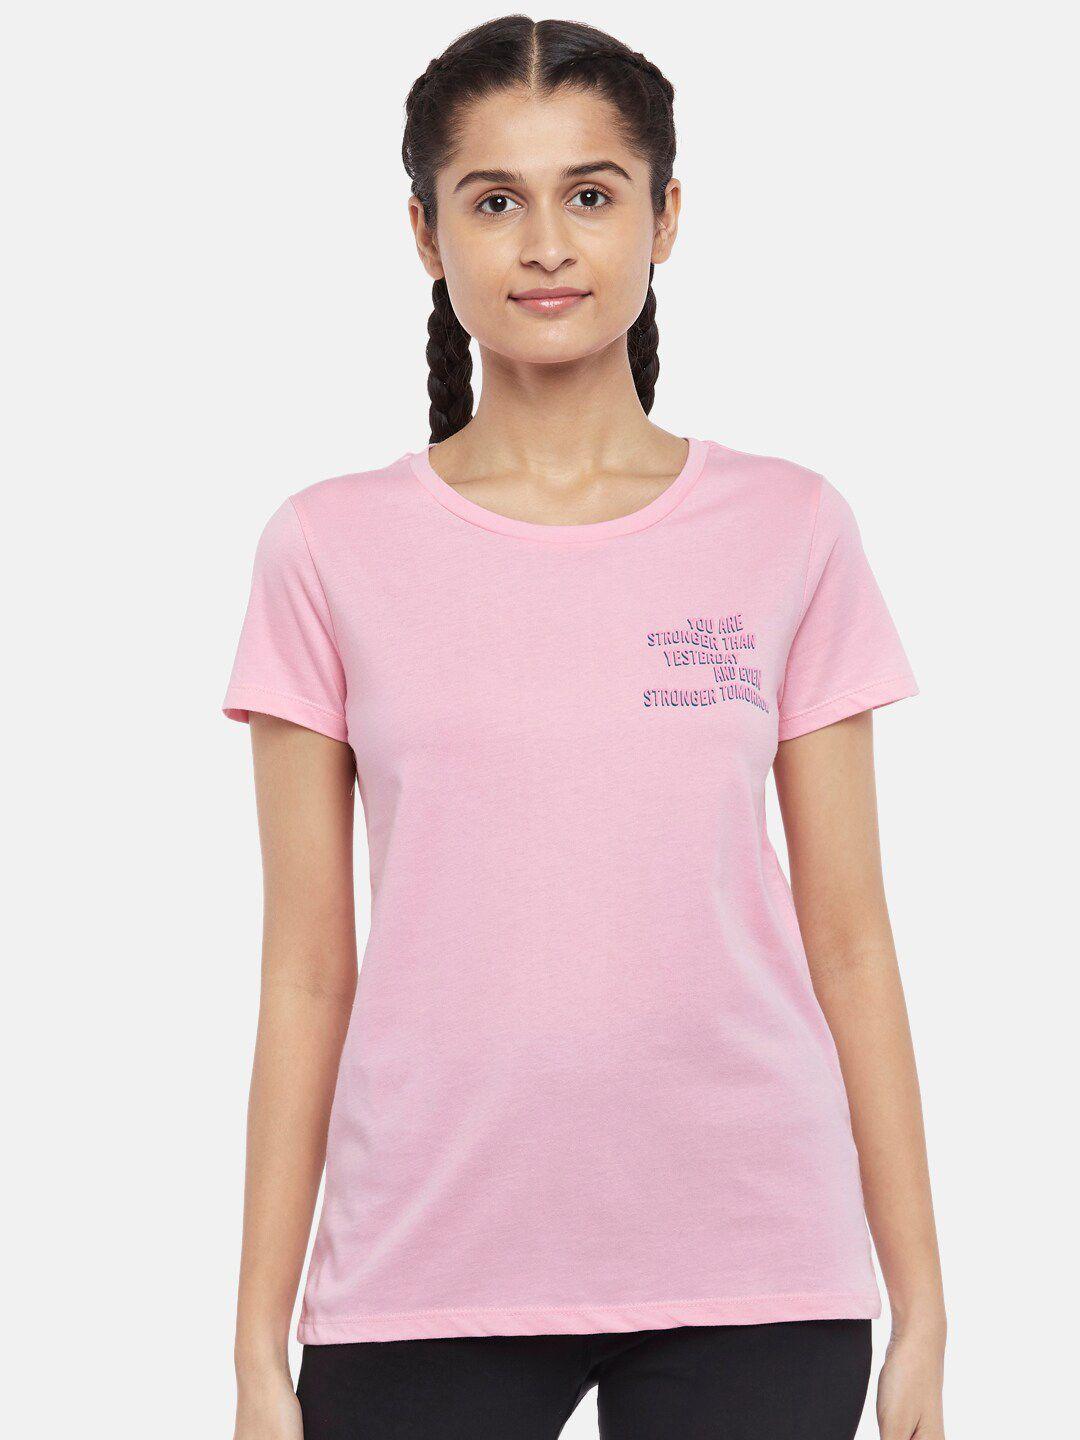 ajile by pantaloons women pink running cotton t-shirt